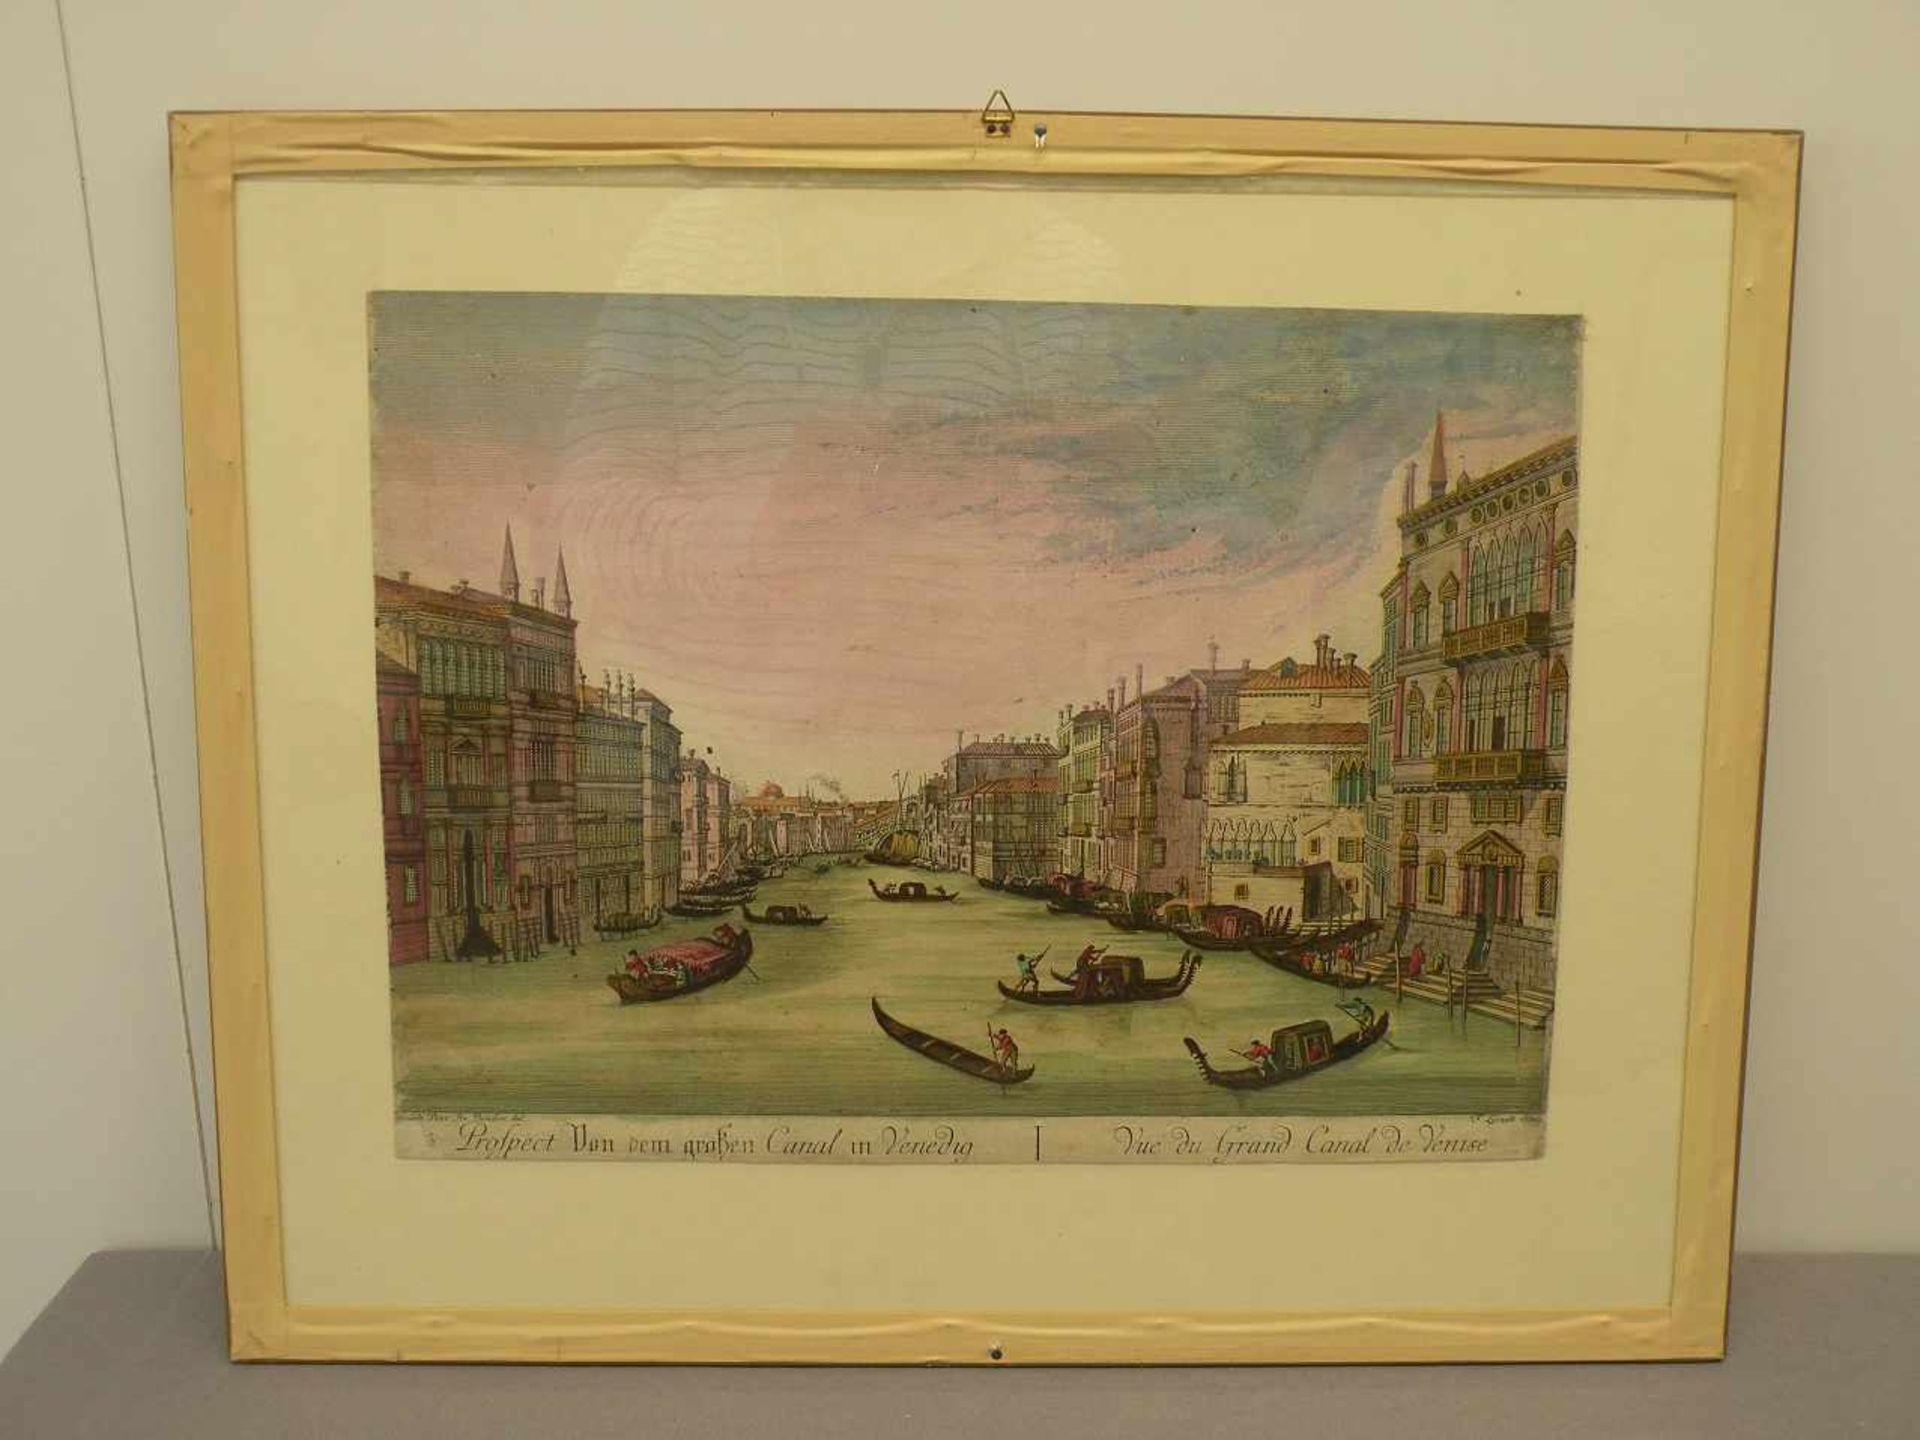 Doppelbild Venedig und Erlangen, colorierte Kupferstiche, 18. Jhd. 29x40 cm, 28x40 cm